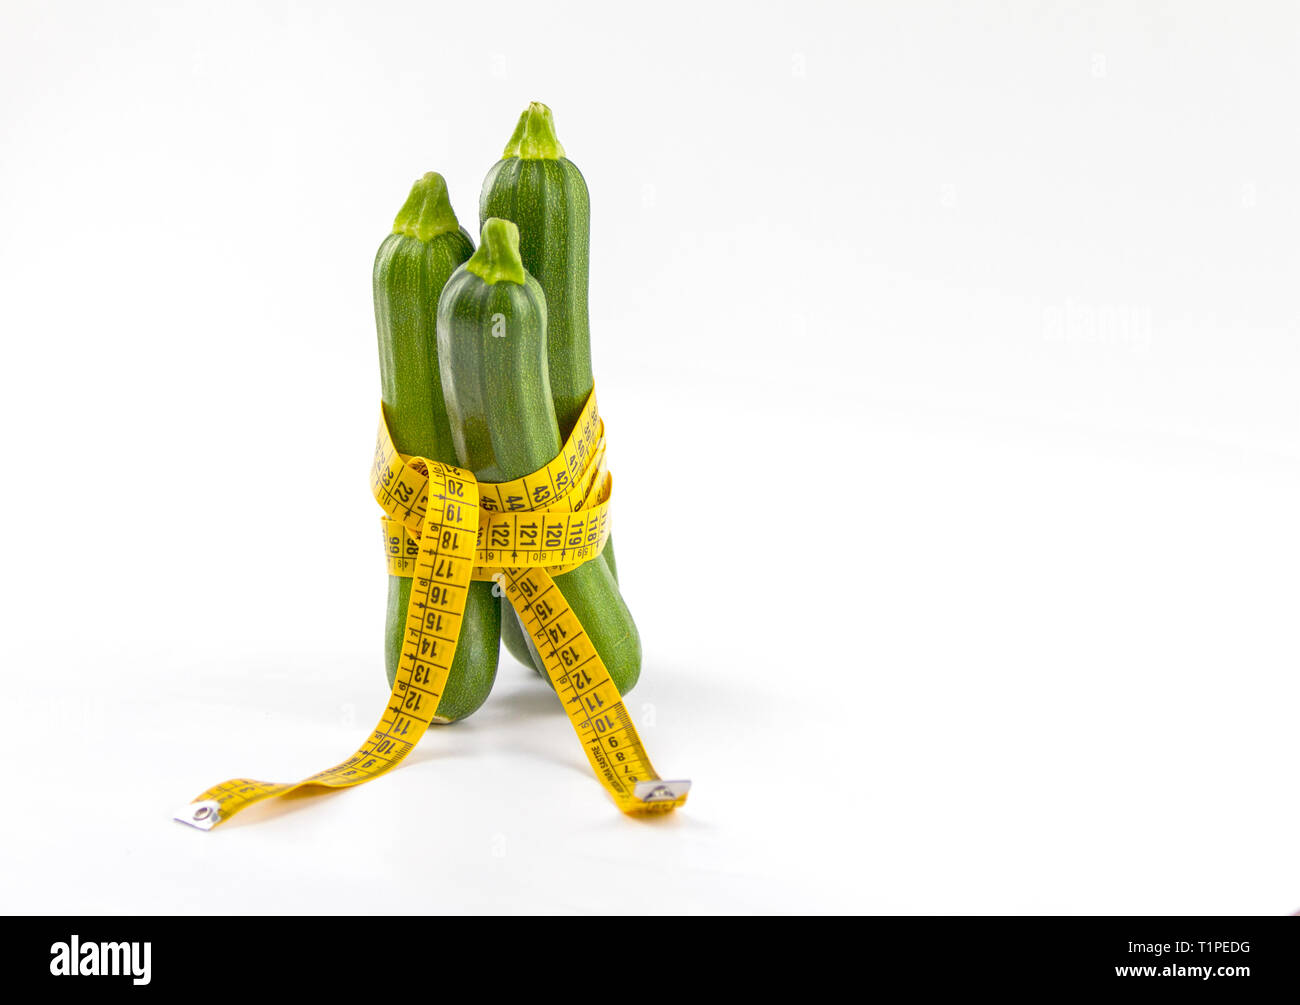 Vegetarische Ernährung, Gewicht zu reduzieren. Drei frisch gepflückte Zucchini in einem Körper Maßband Herrscher, die Bordkante symbolisiert gewickelt Stockfoto